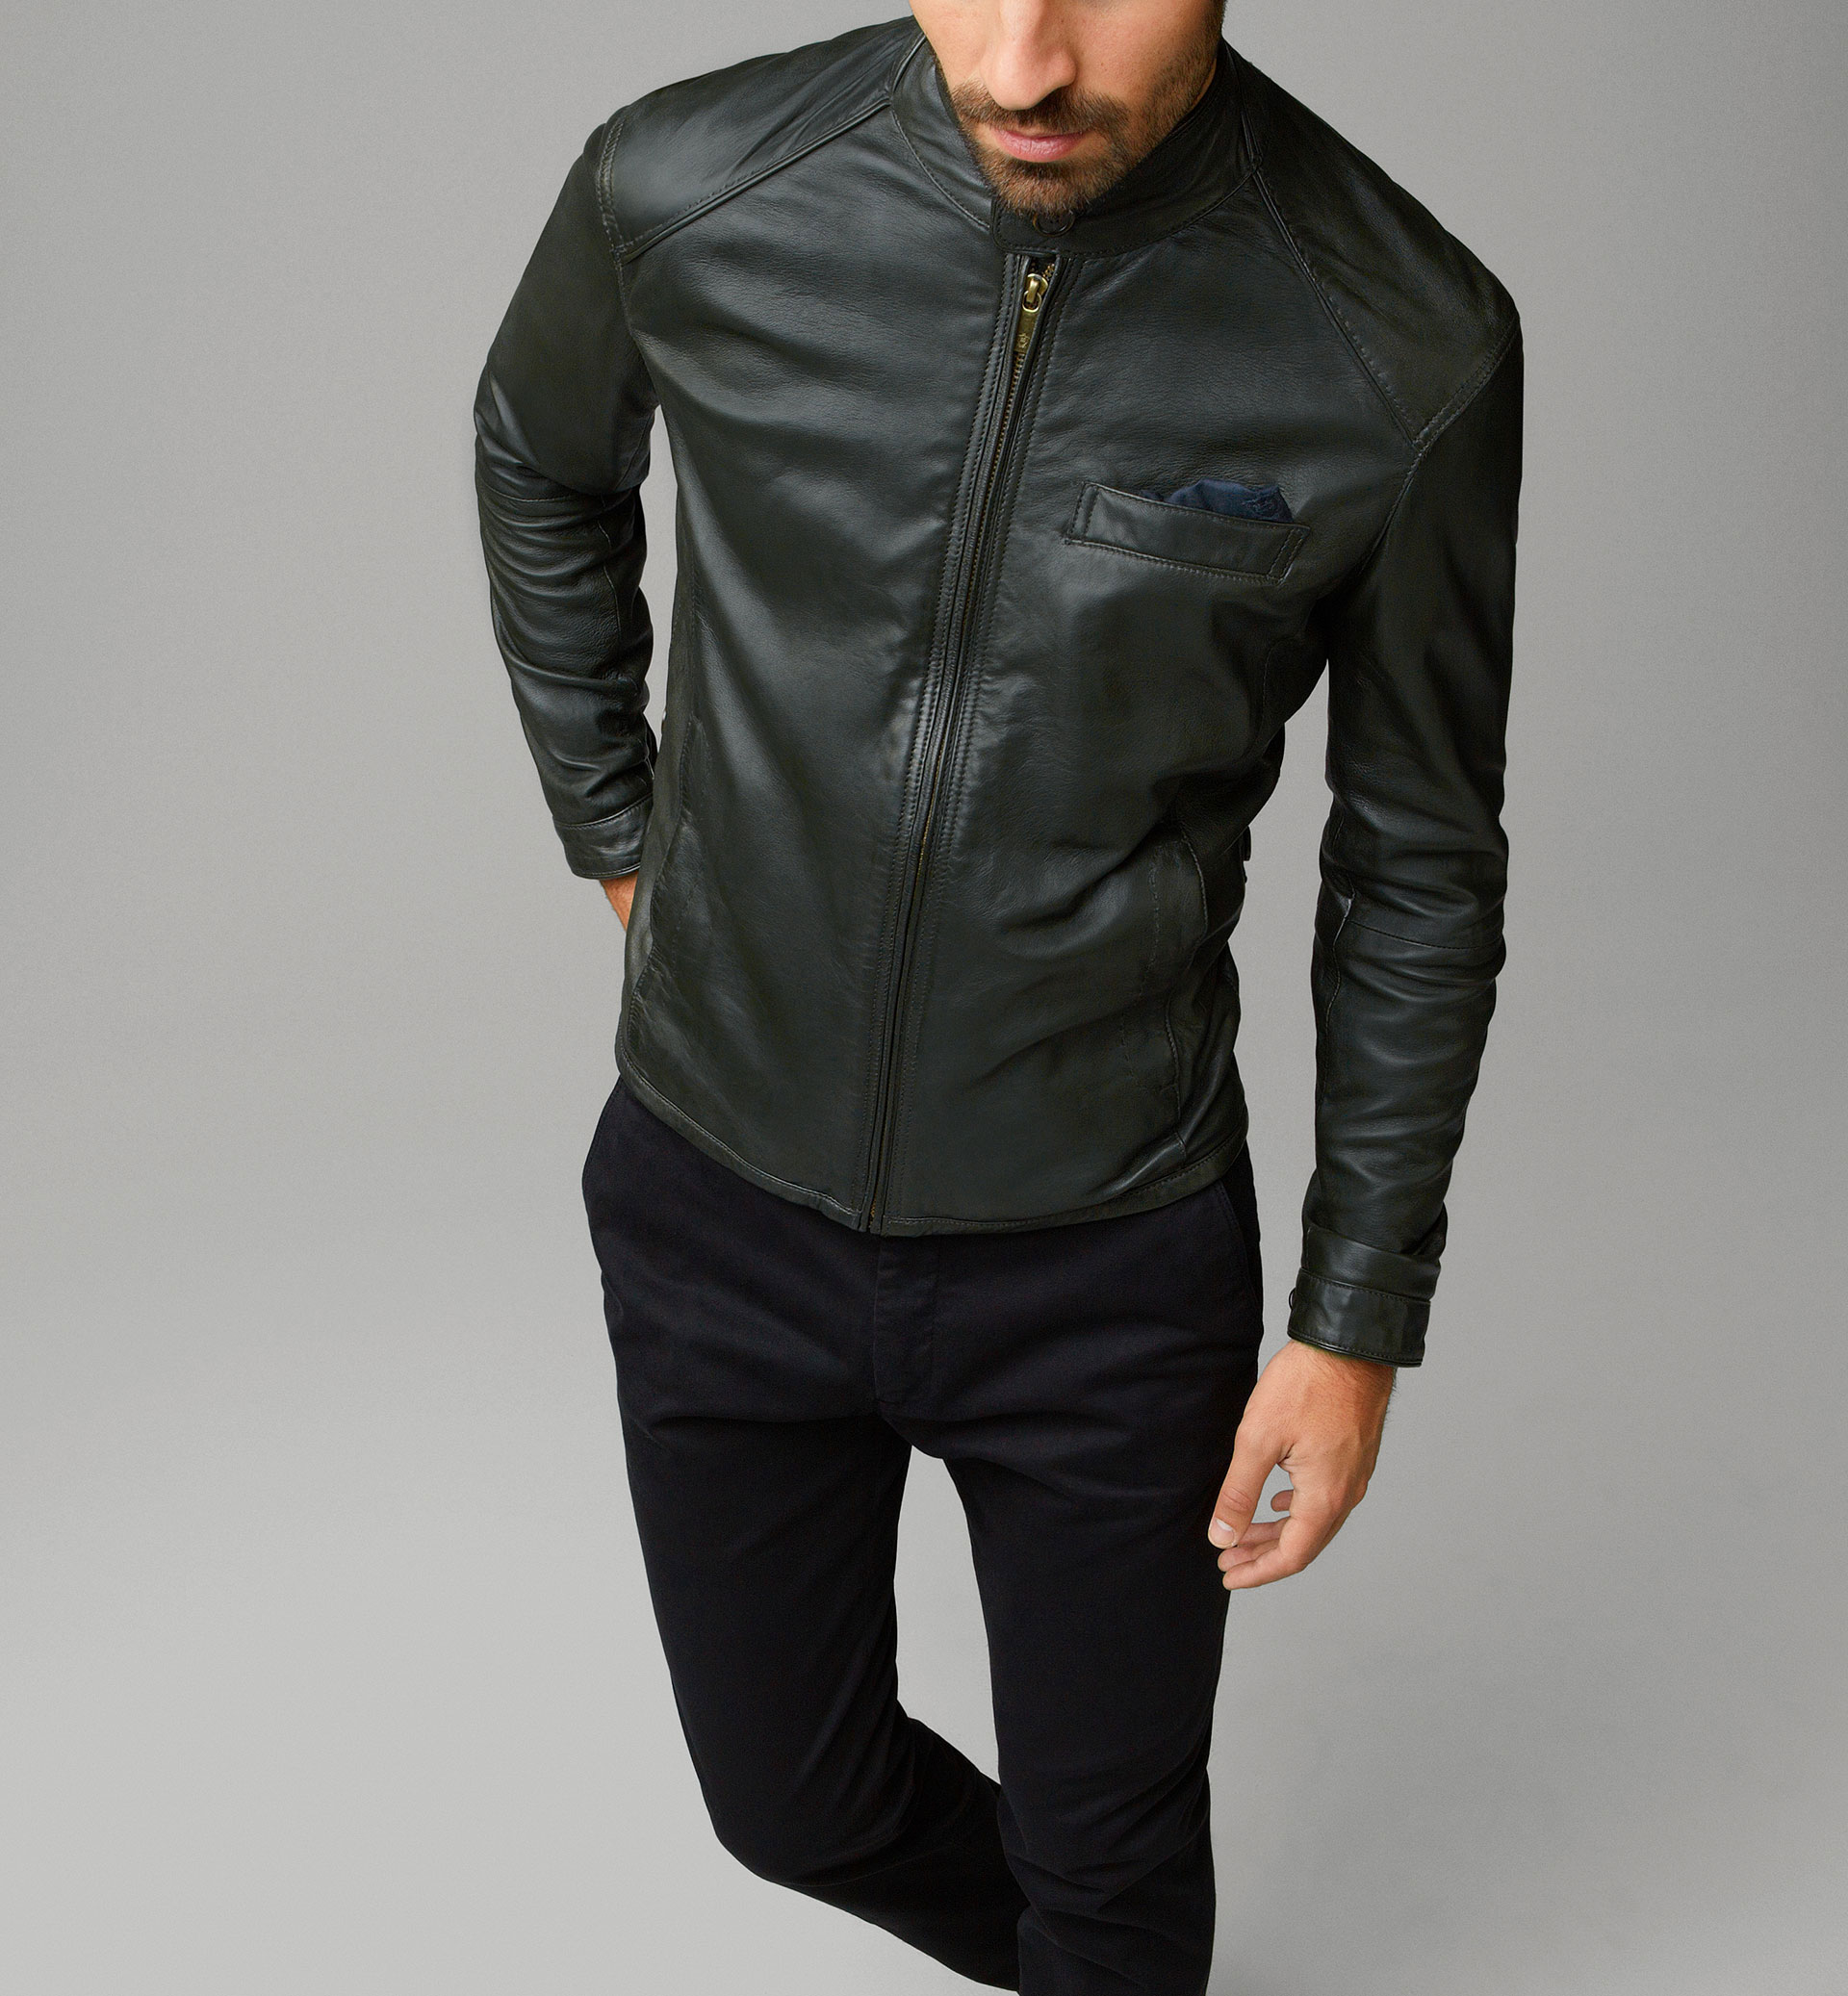 Hugo Boss leather jacket quality : r/malefashionadvice